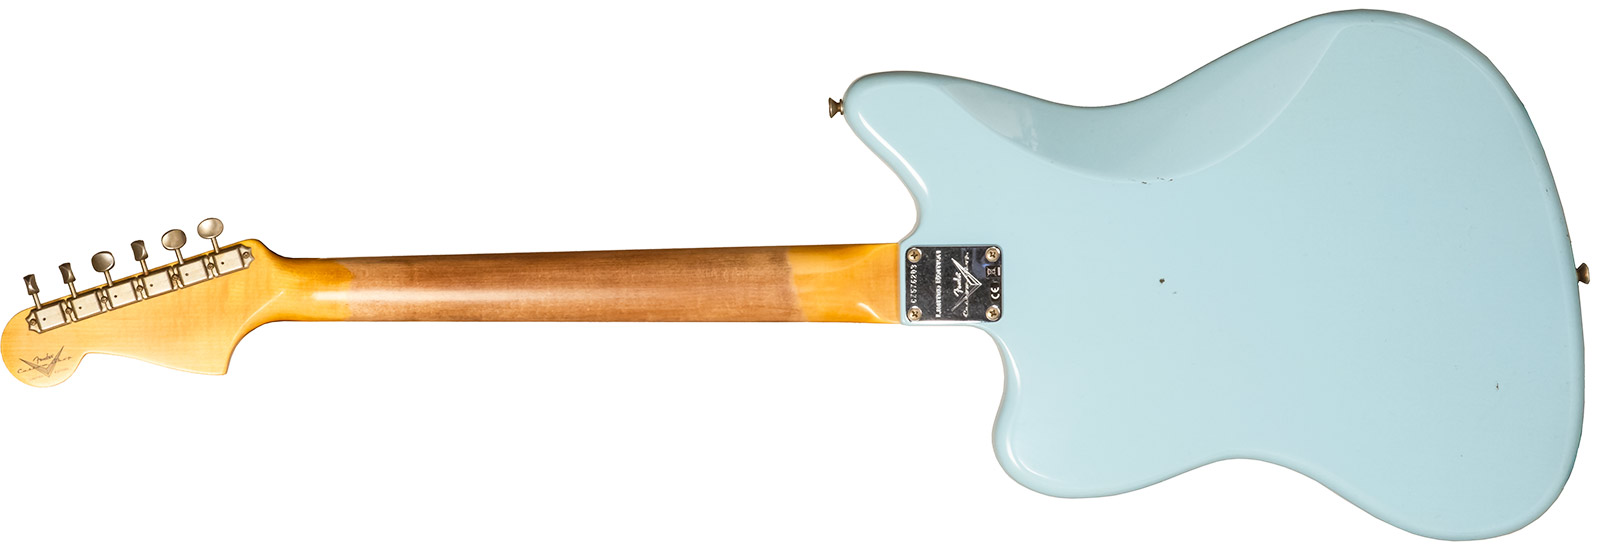 Fender Custom Shop Jazzmaster 1959 250k 2s Trem Rw #cz576203 - Journeyman Relic Aged Daphne Blue - Guitare Électrique RÉtro Rock - Variation 1